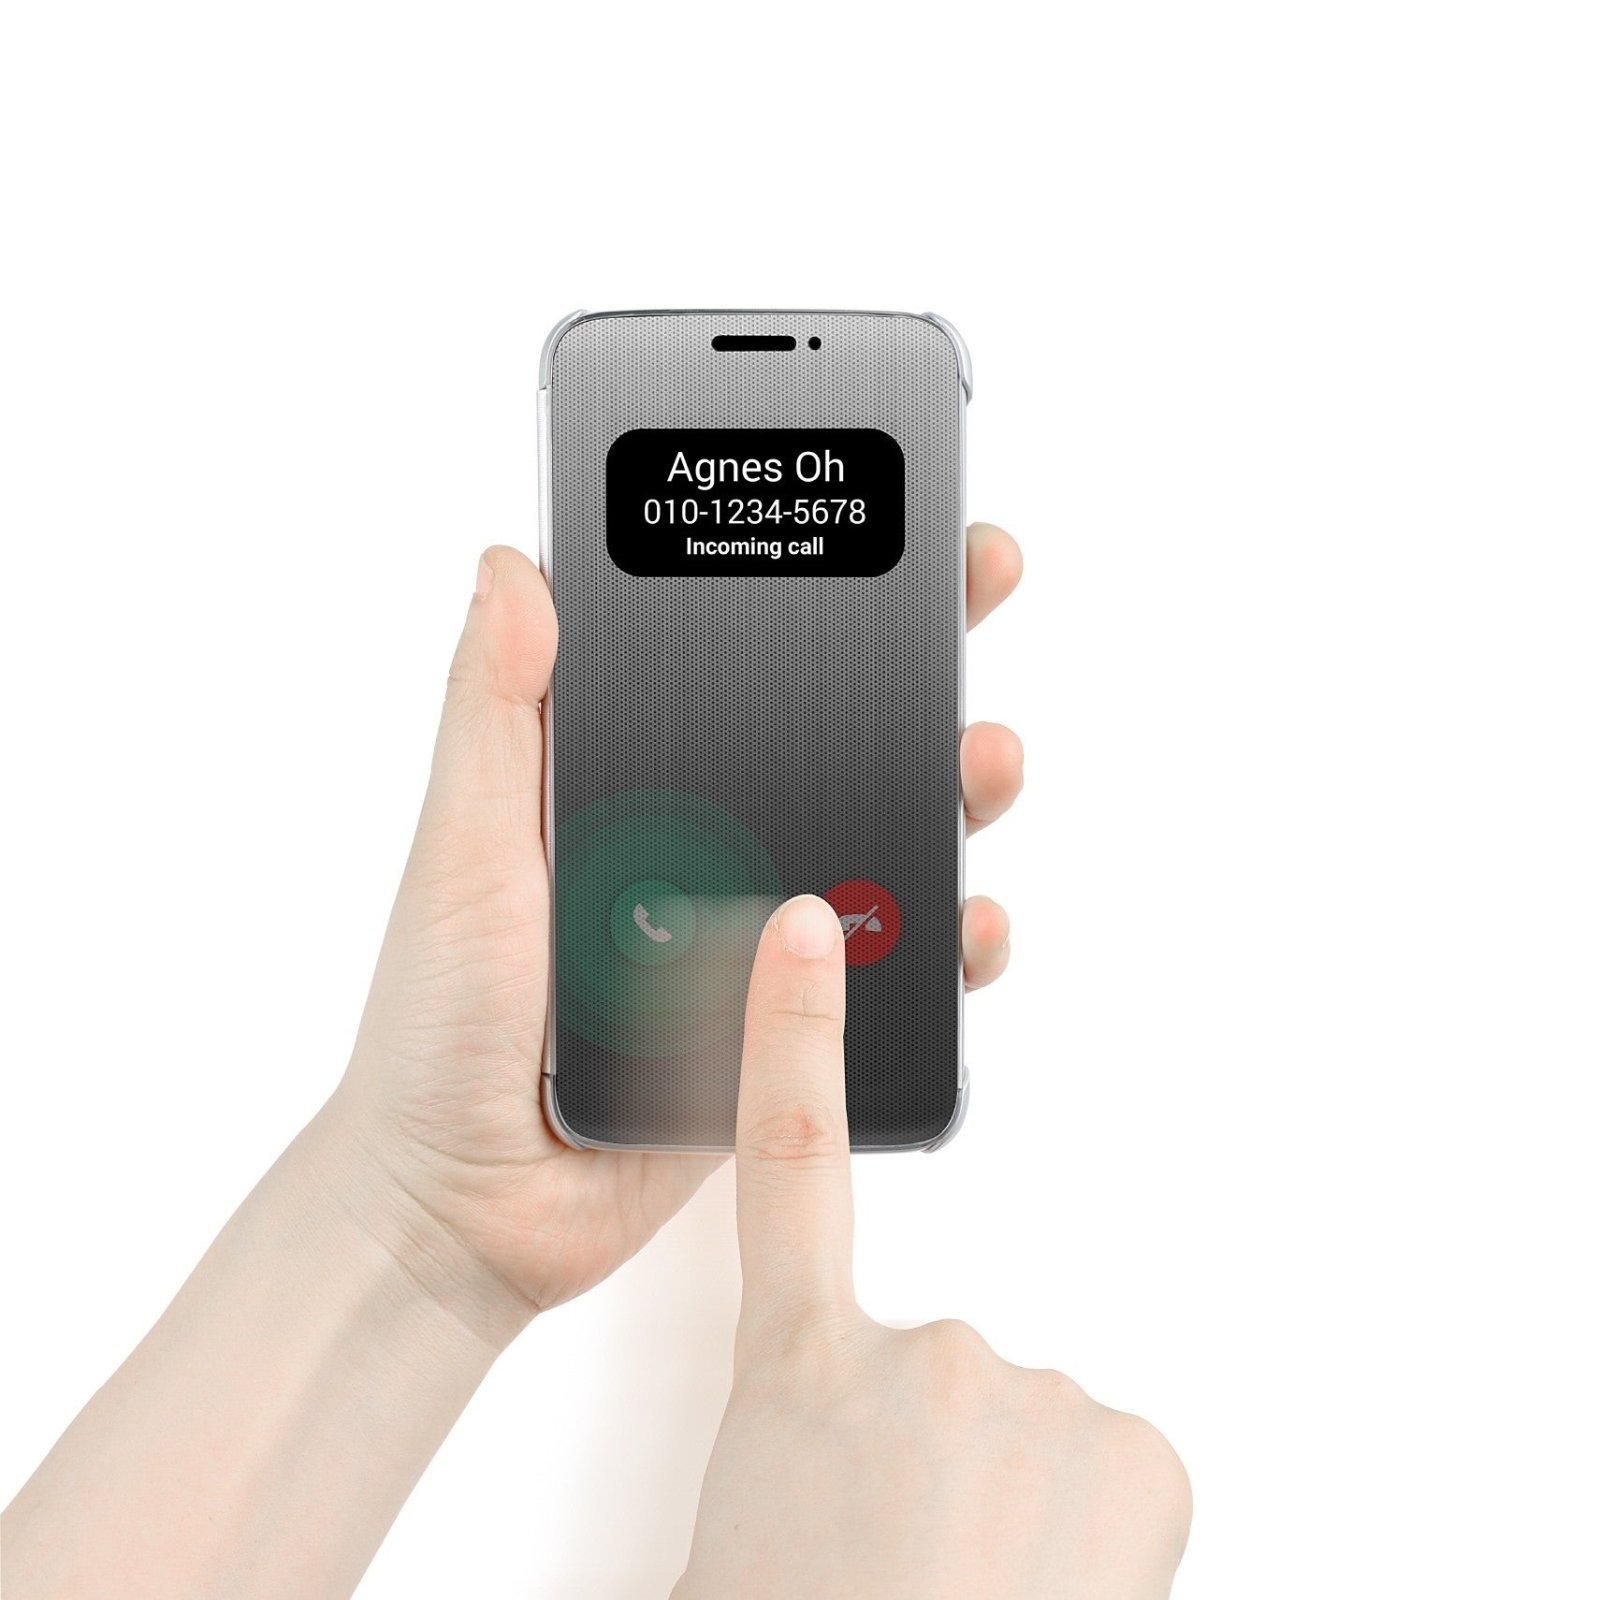 LG anuncia la nueva Quick Cover para el LG G5 antes que el propio dispositivo